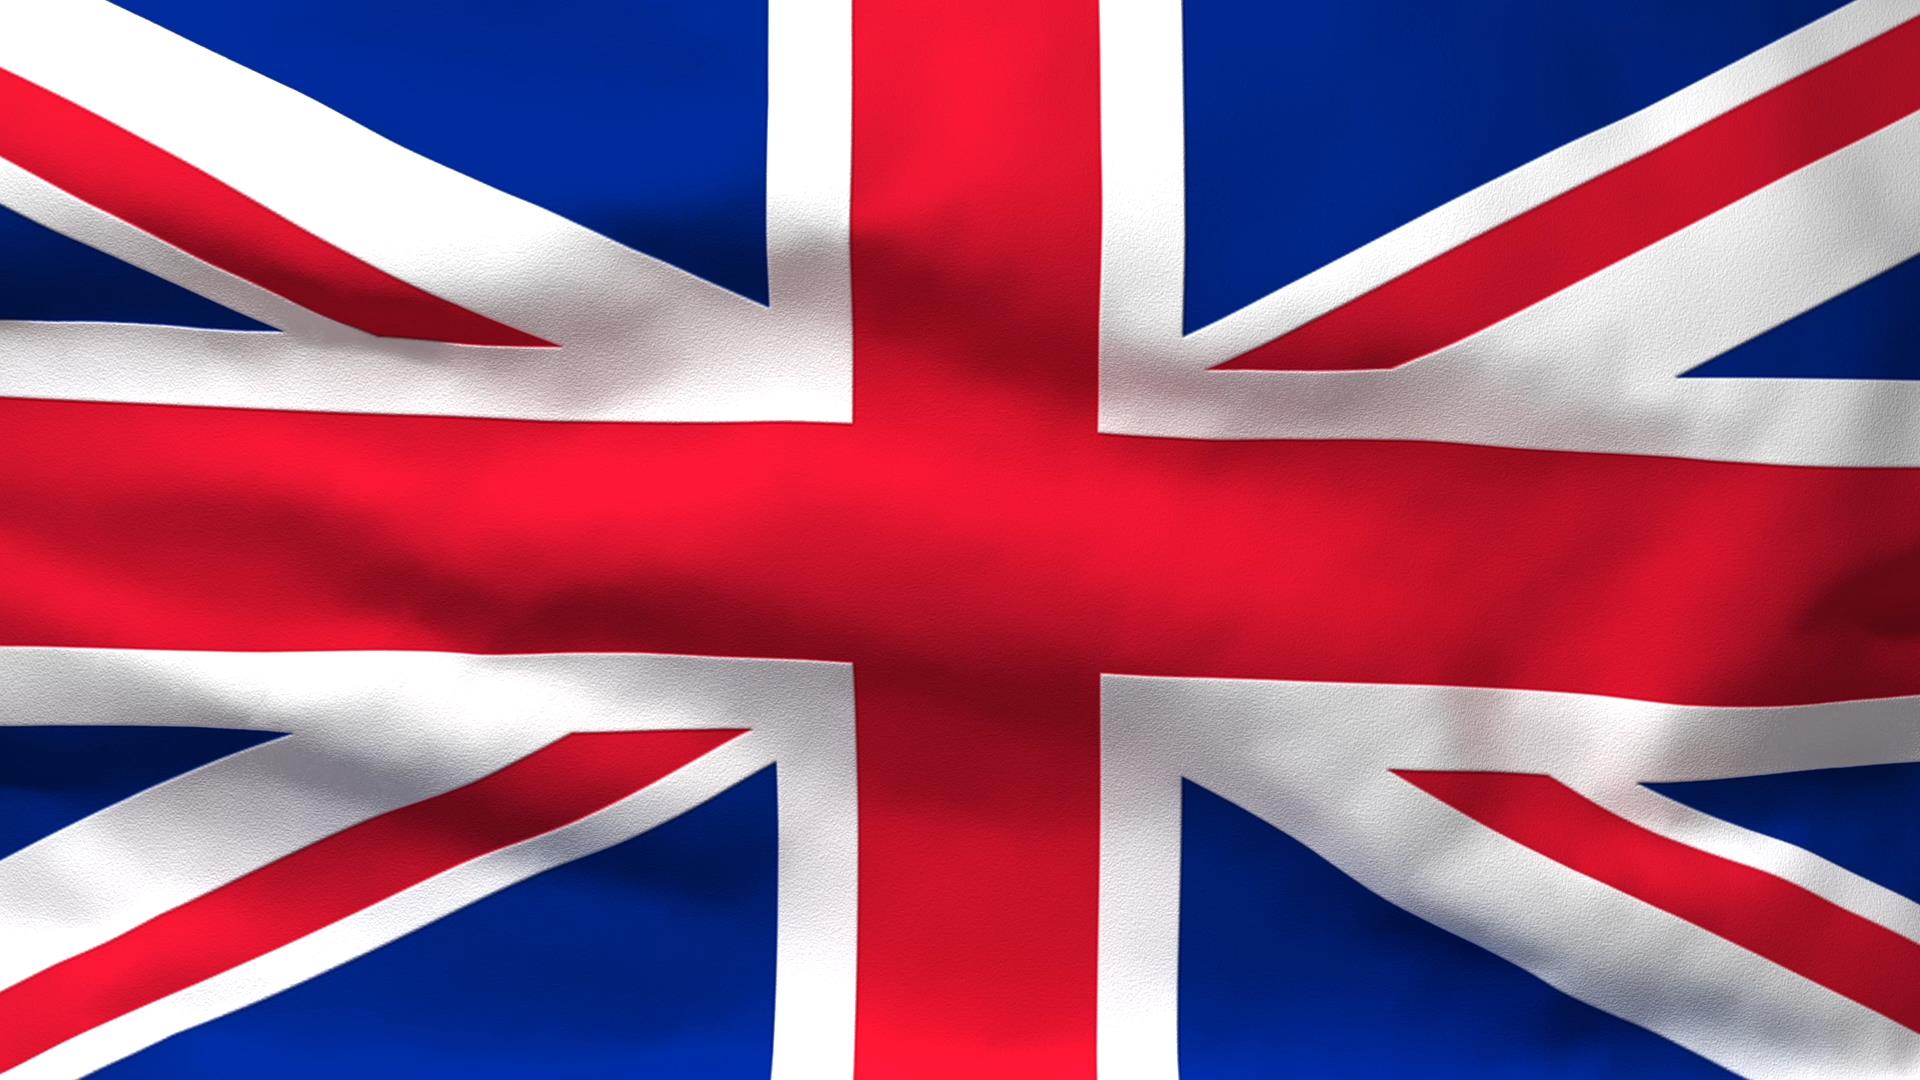 Waving Flag of Great Britain - Video - ezMediArt - It's Easy!